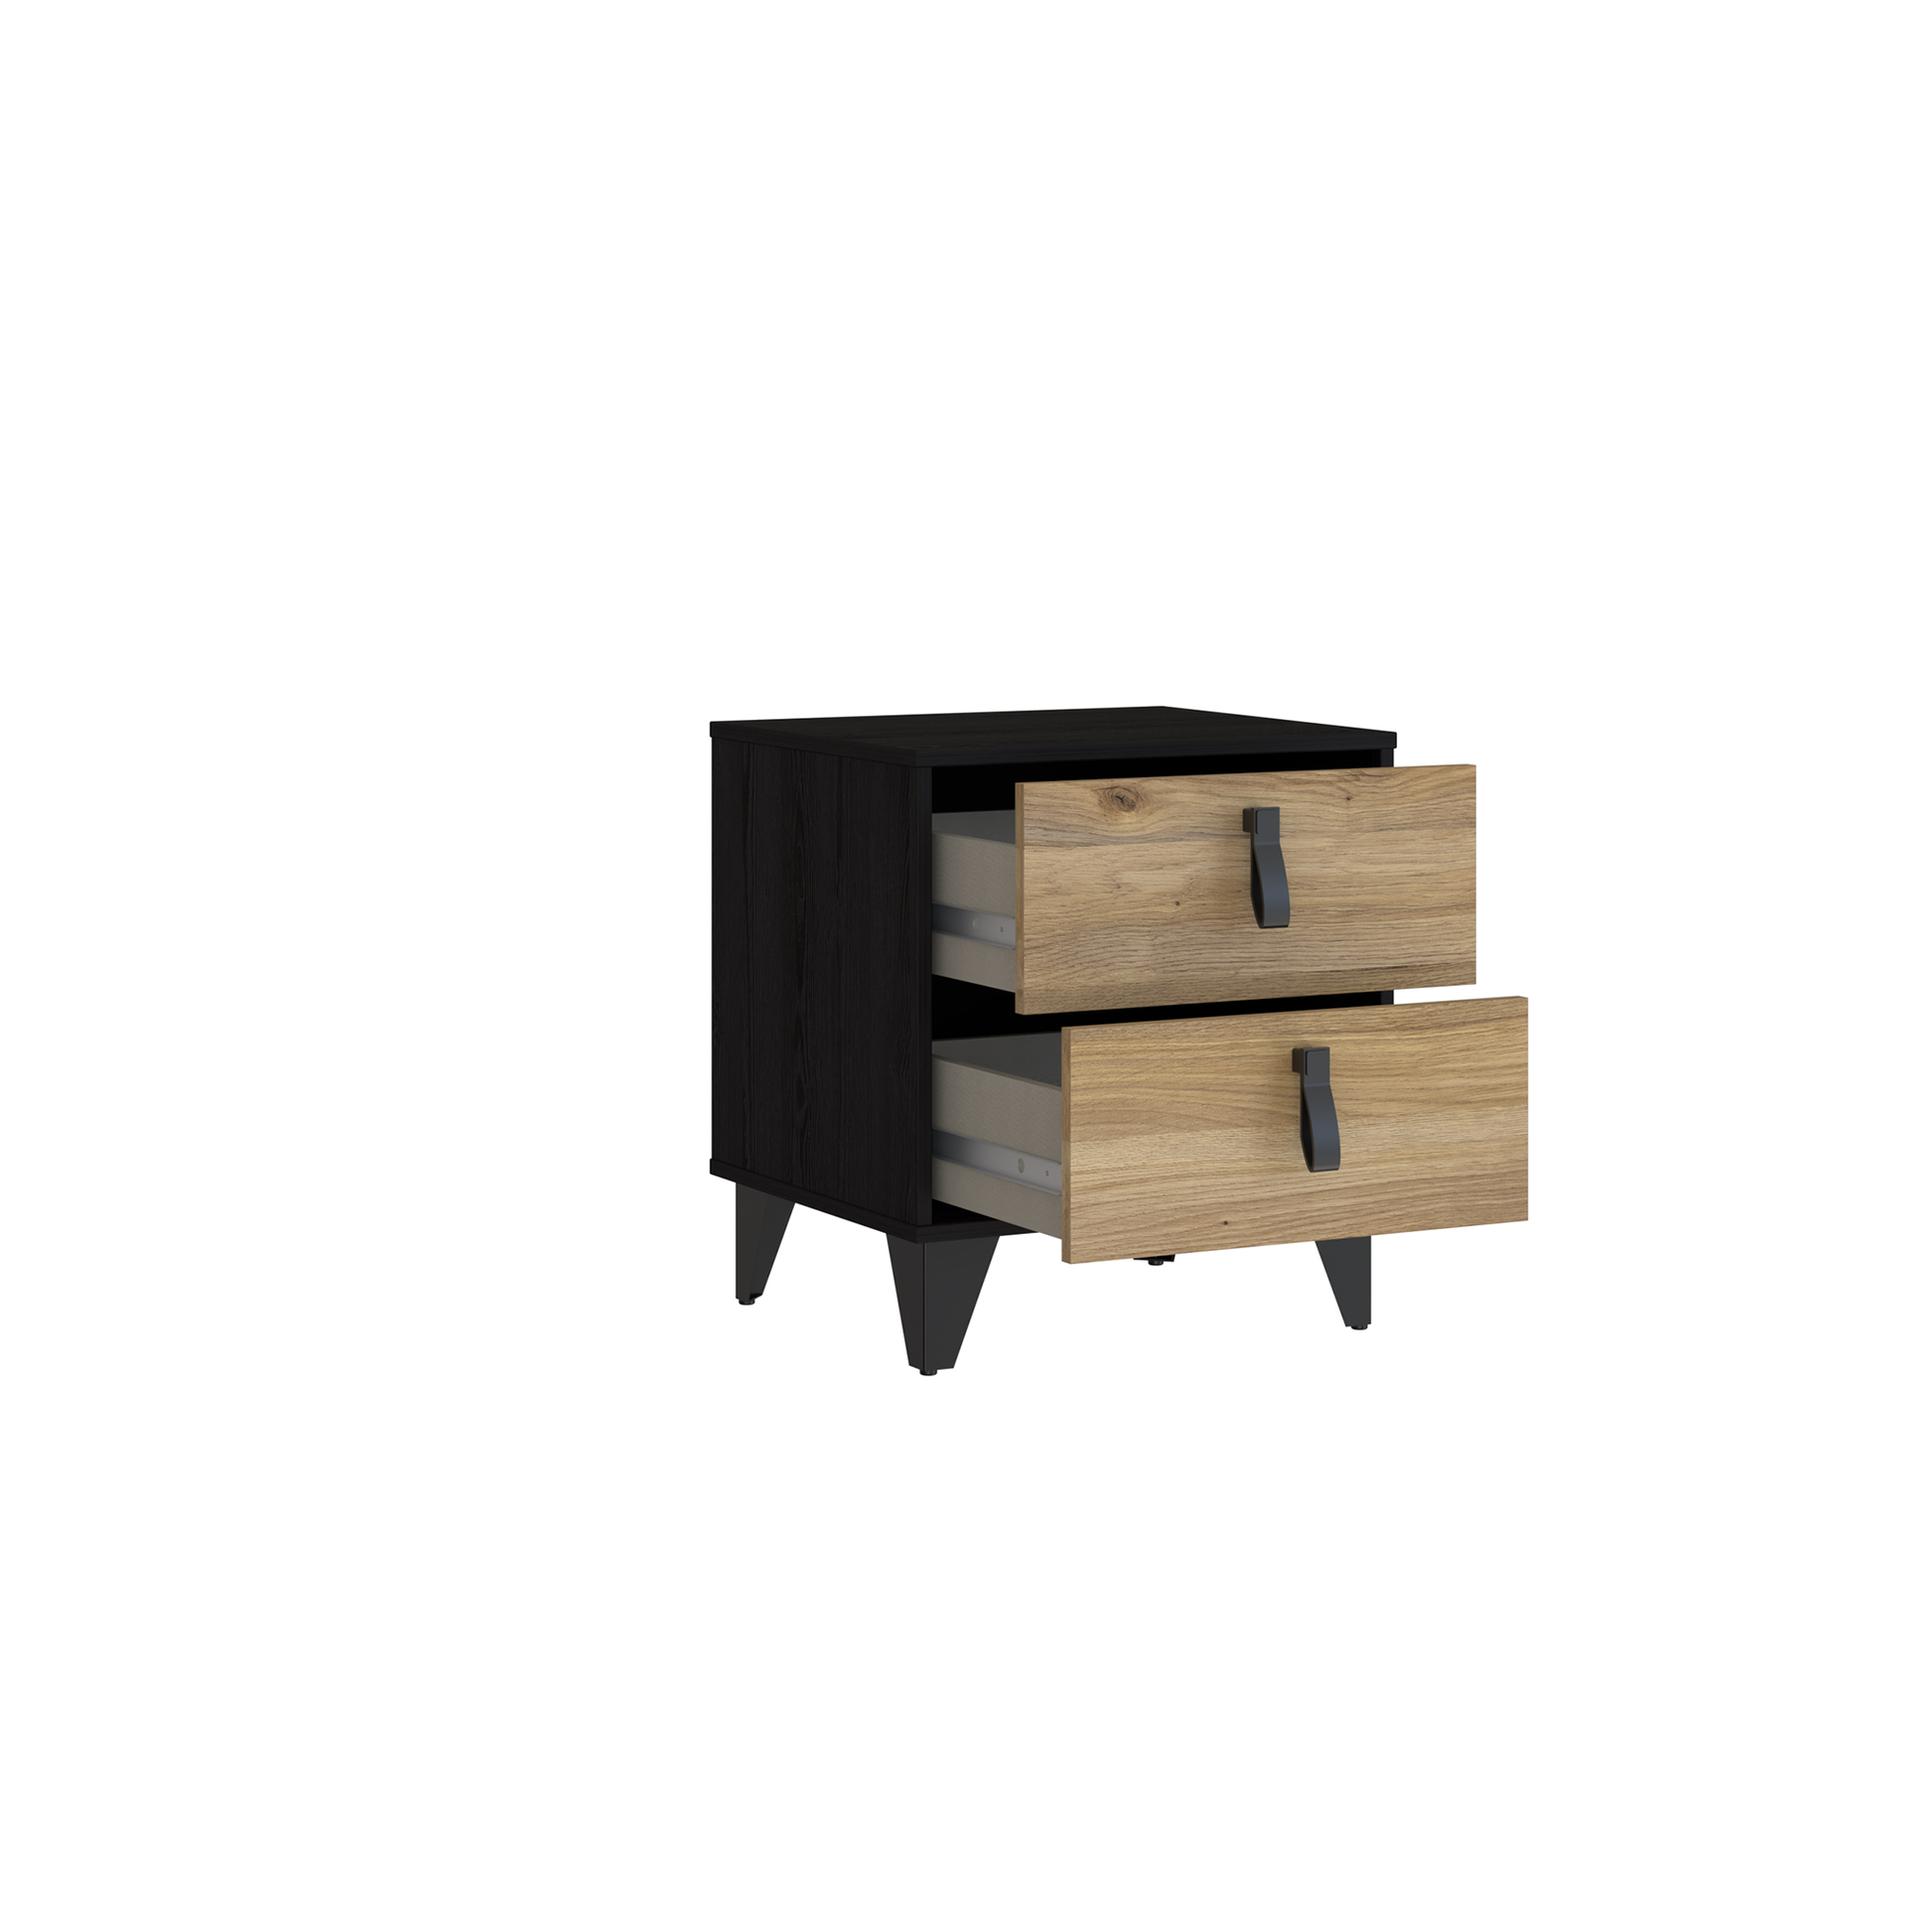 Szafka nocna w kolorze czerni i drewna z dwiema szufladami BLACKDWARF011